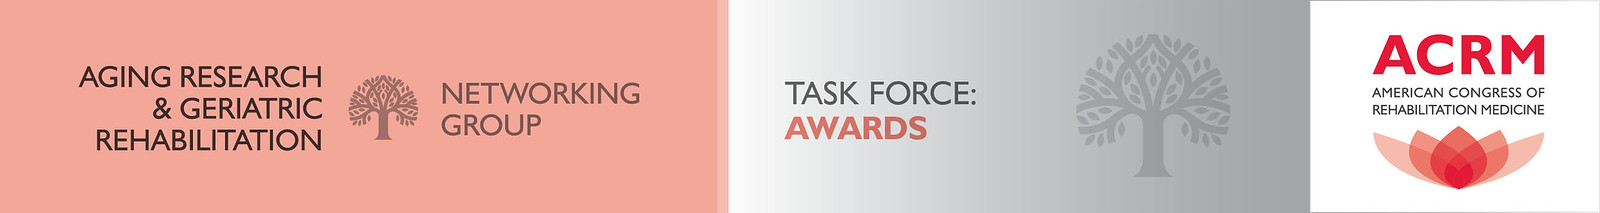 ARGR Awards Task Force header